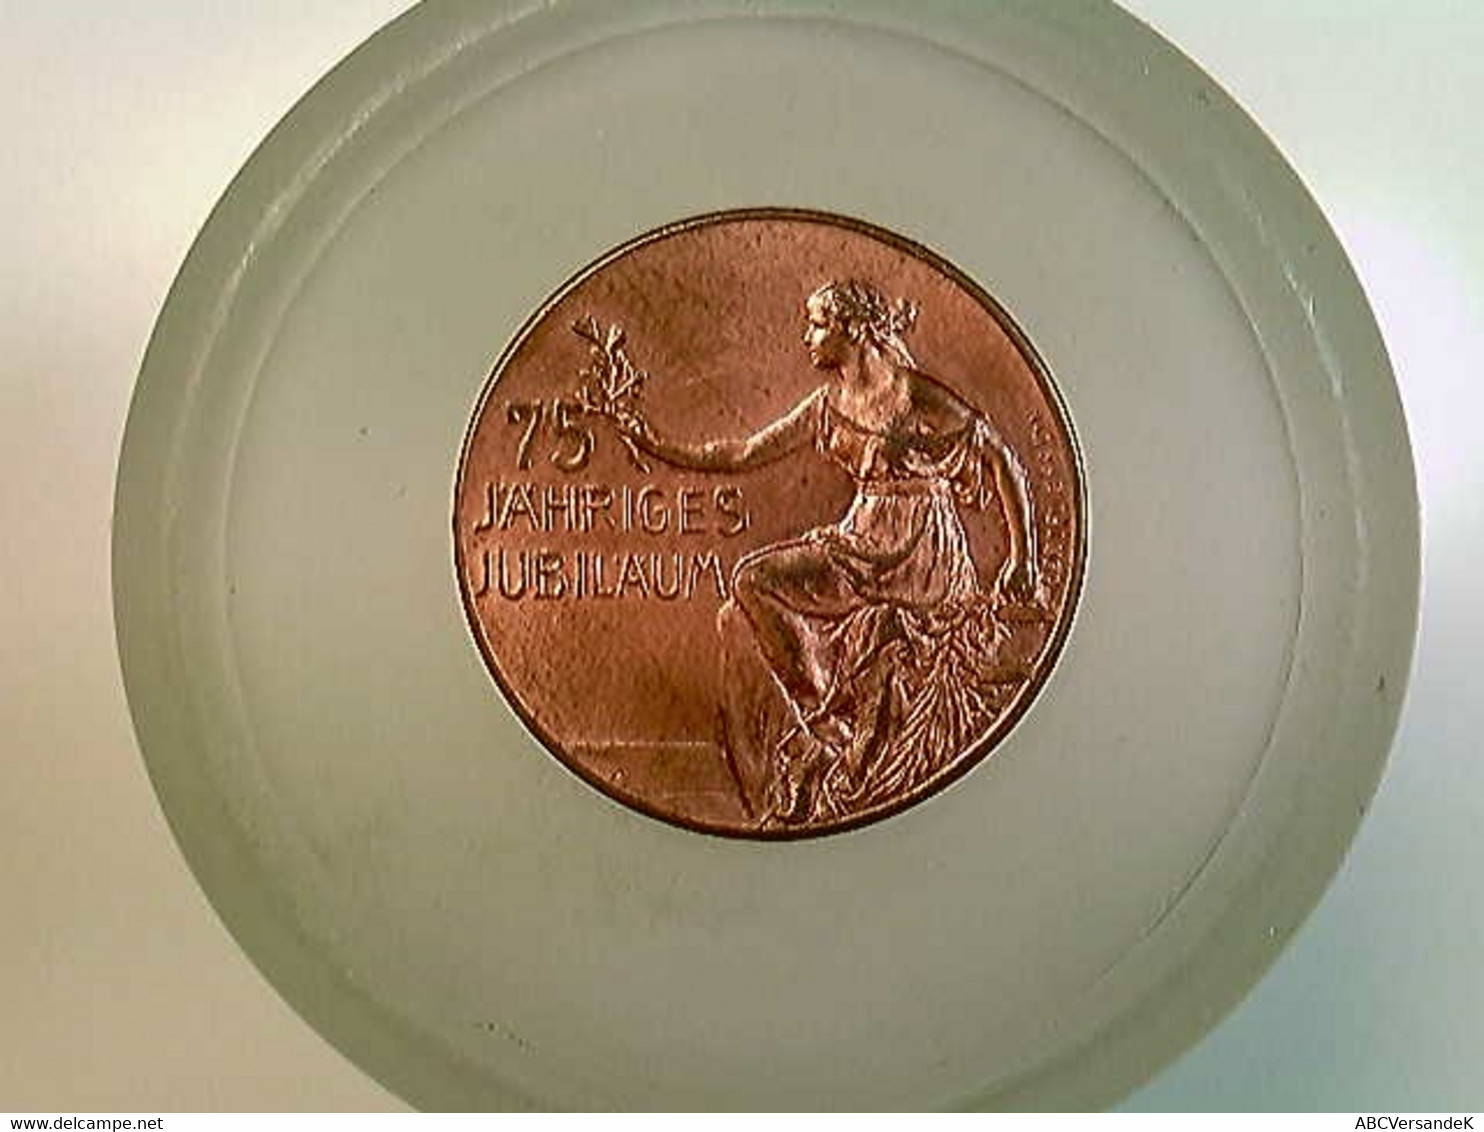 Medaille V. Manheimer Berlin Jubiläumsmünze 1839-1914, Oertel Berlin 1914 - Numismatik